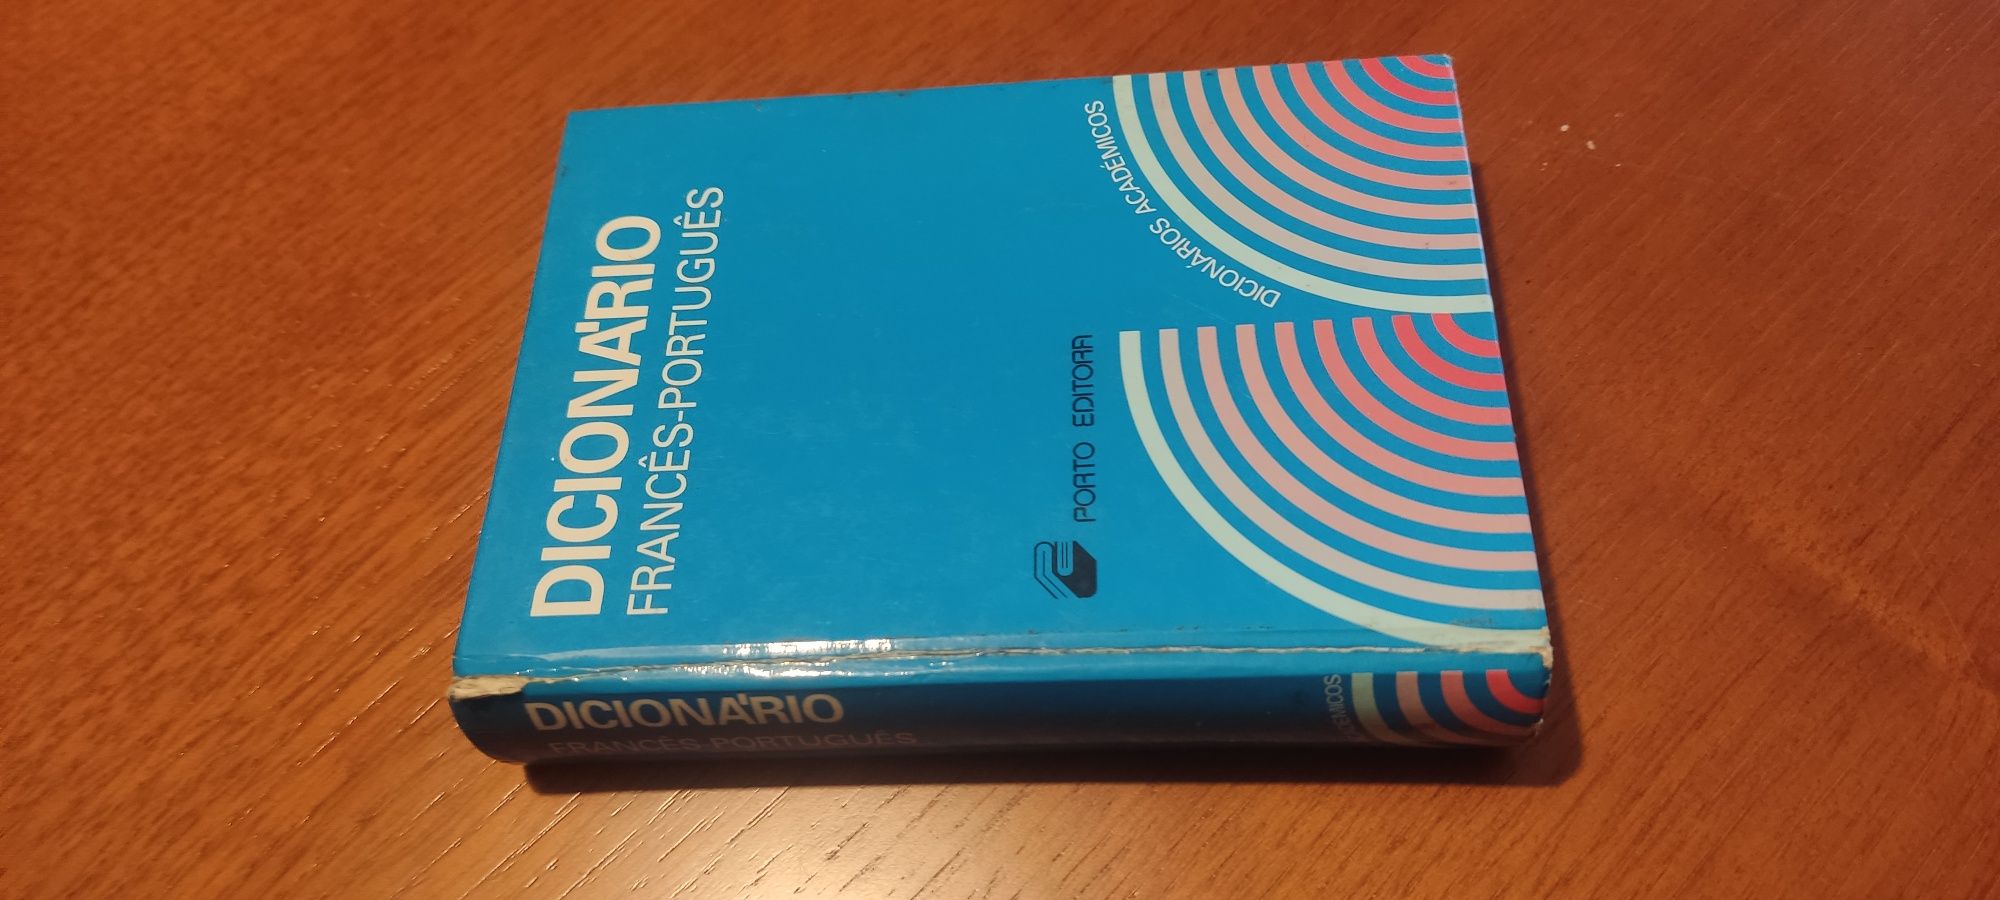 Dicionário francês portugues